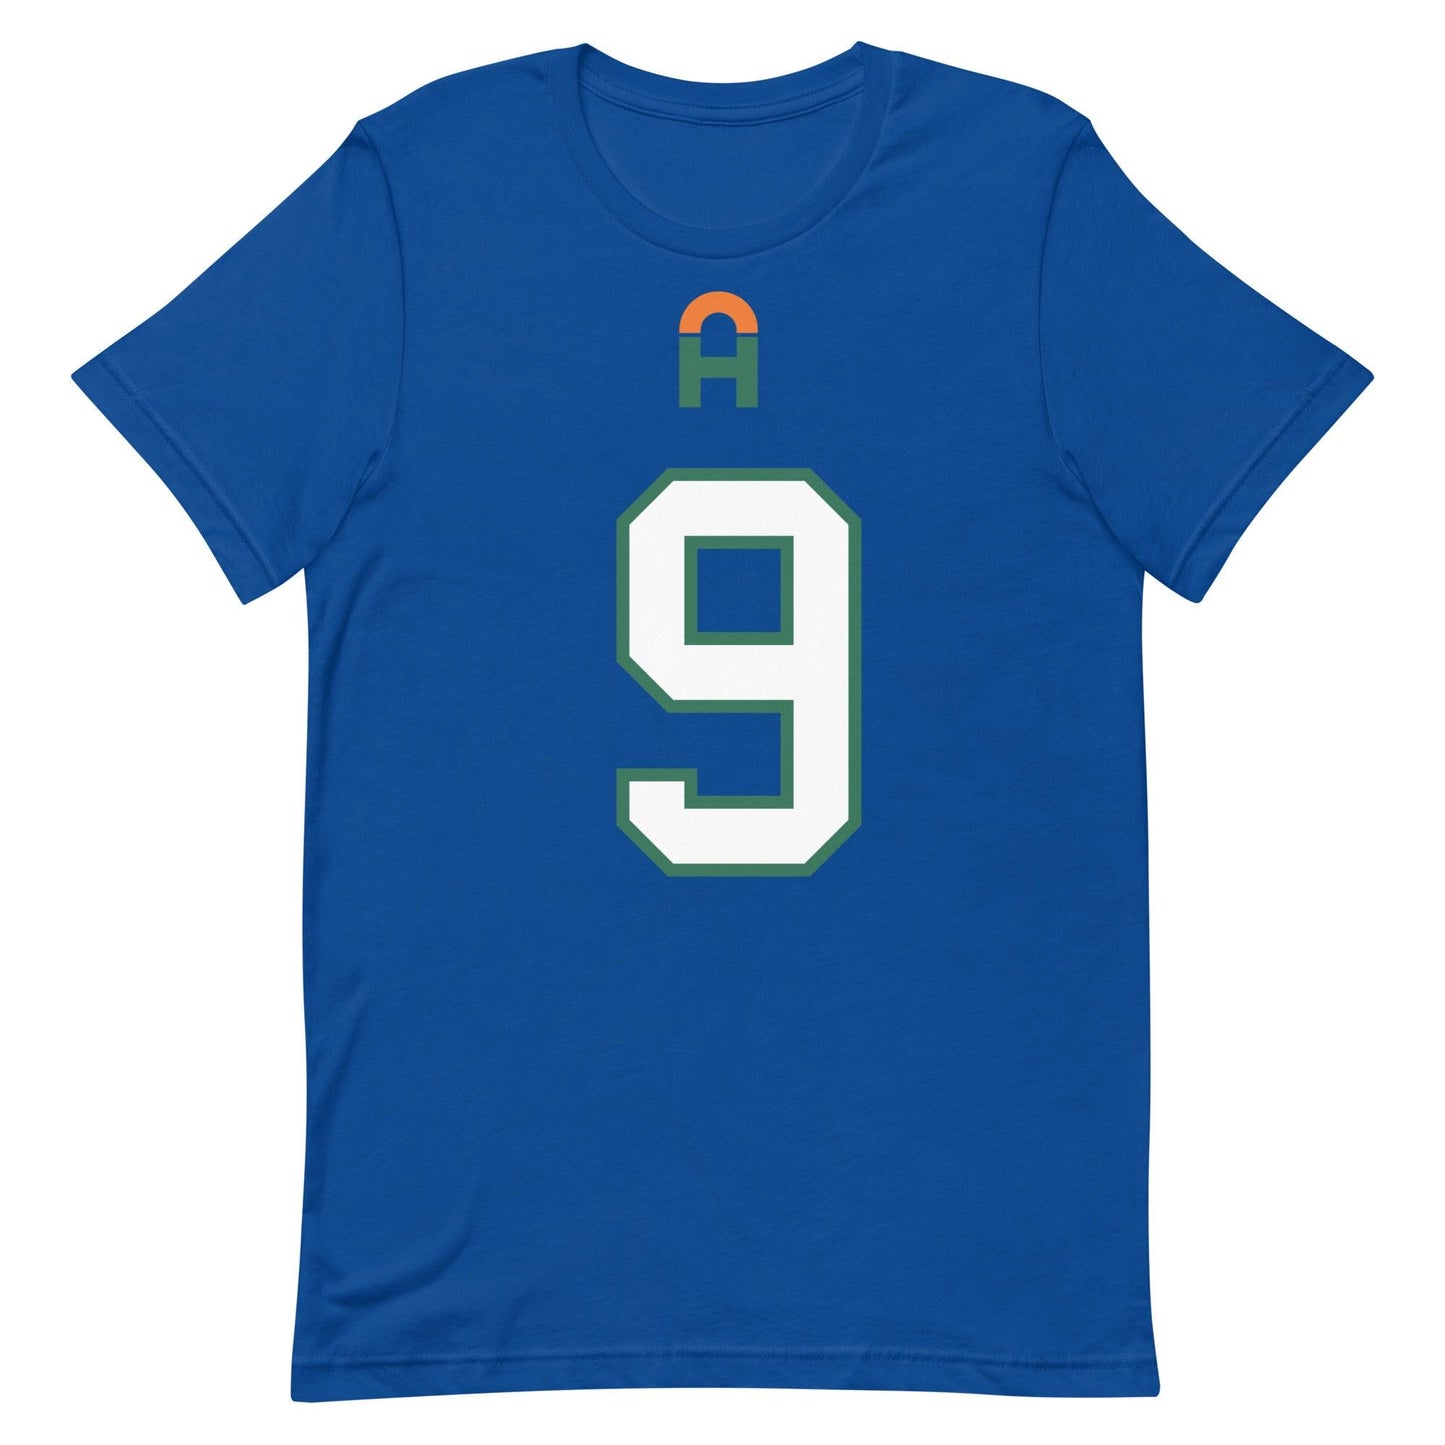 Avery Huff Jr. "Jersey" t-shirt - Fan Arch